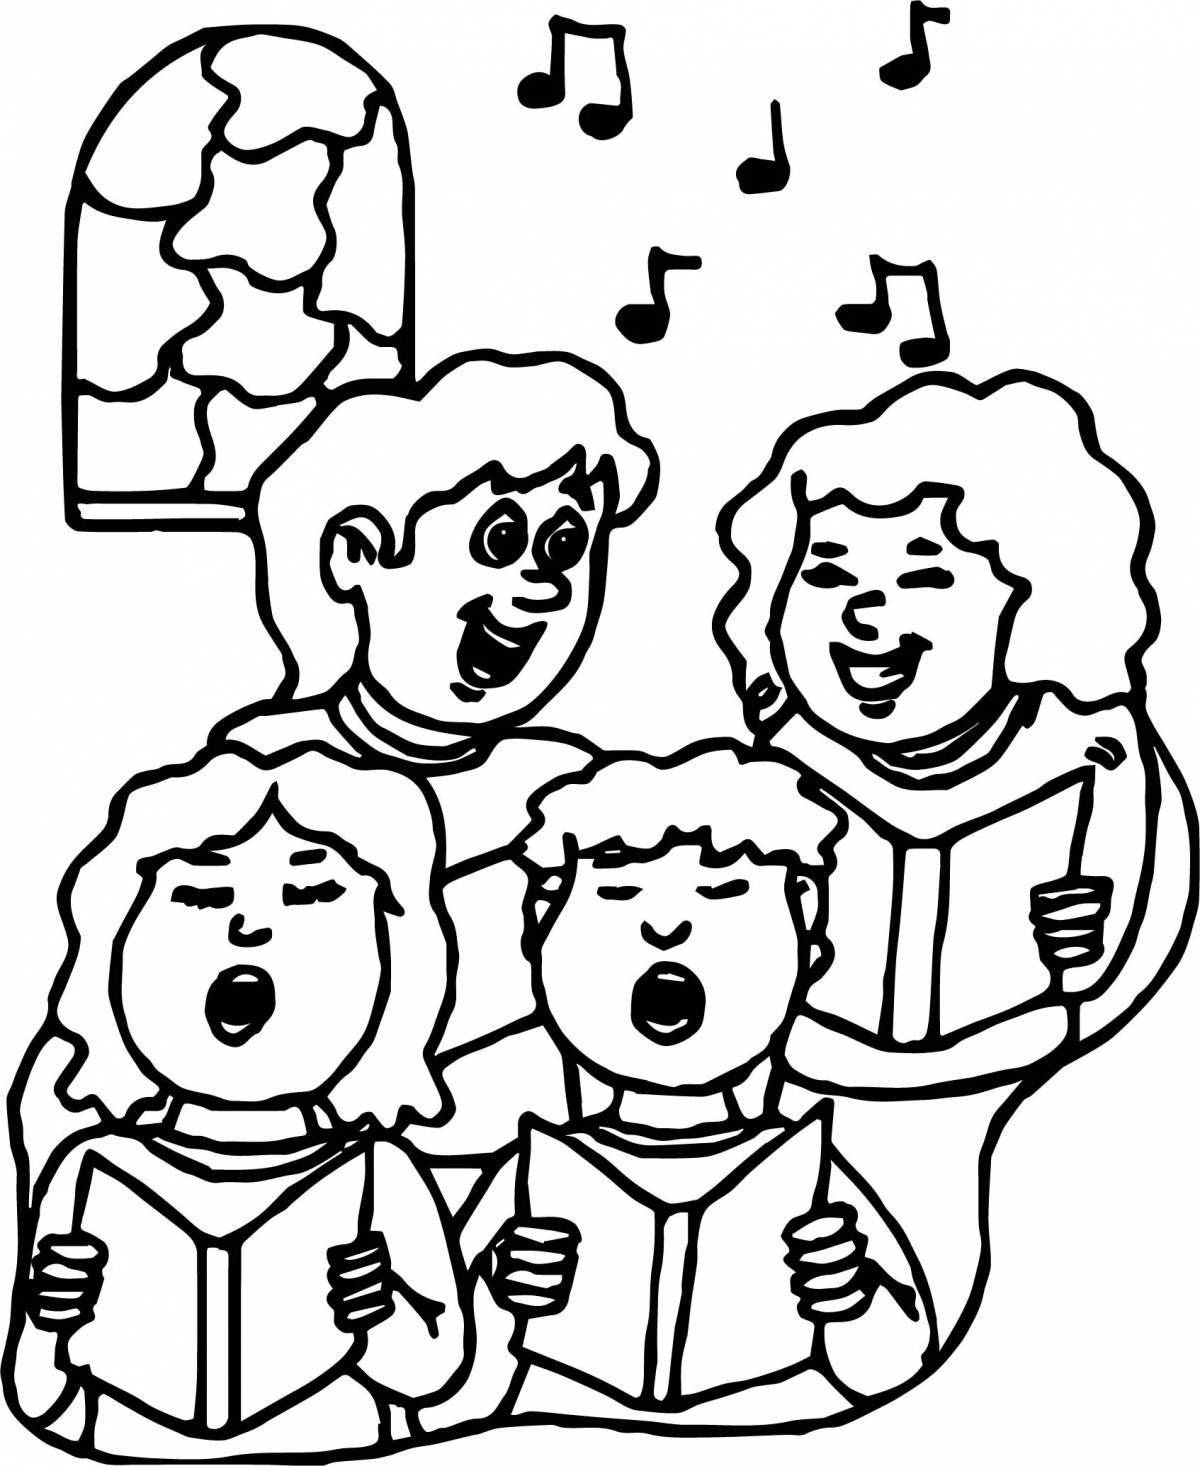 Violent choir coloring pages